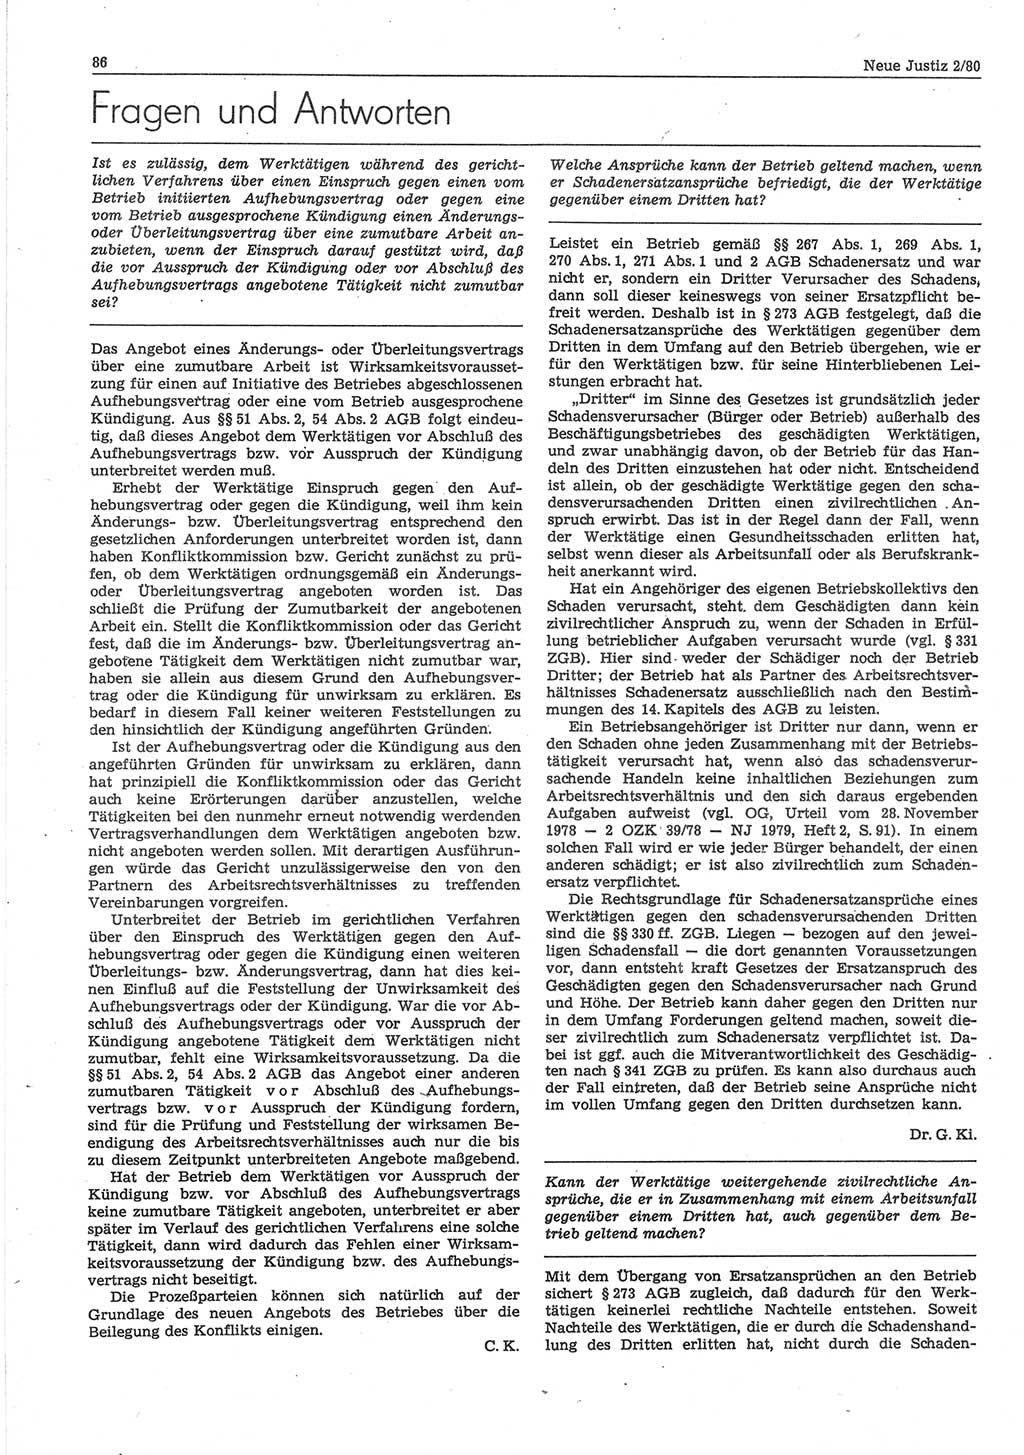 Neue Justiz (NJ), Zeitschrift für sozialistisches Recht und Gesetzlichkeit [Deutsche Demokratische Republik (DDR)], 34. Jahrgang 1980, Seite 86 (NJ DDR 1980, S. 86)